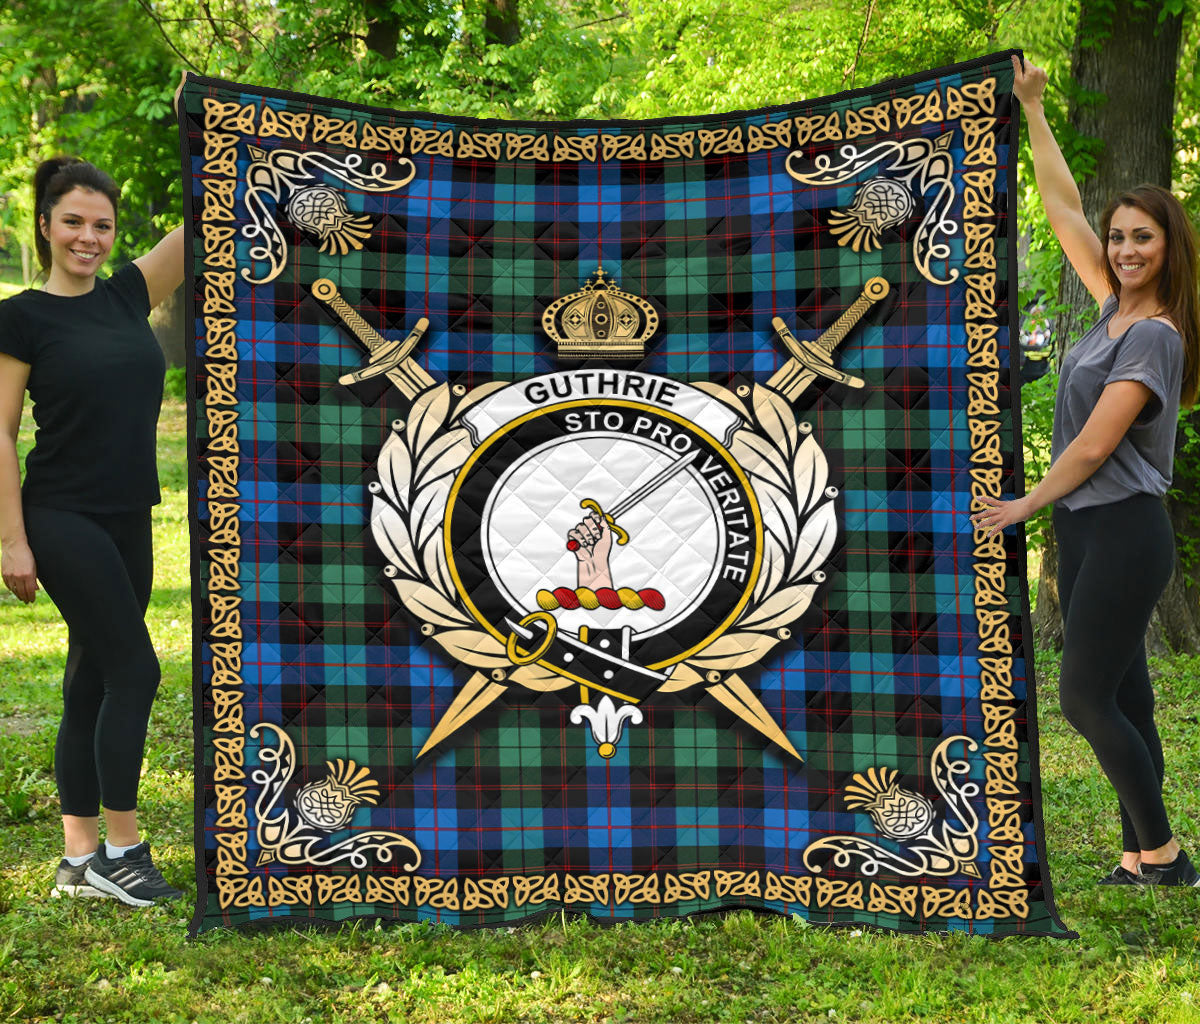 Guthrie Ancient Tartan Crest Premium Quilt - Celtic Thistle Style